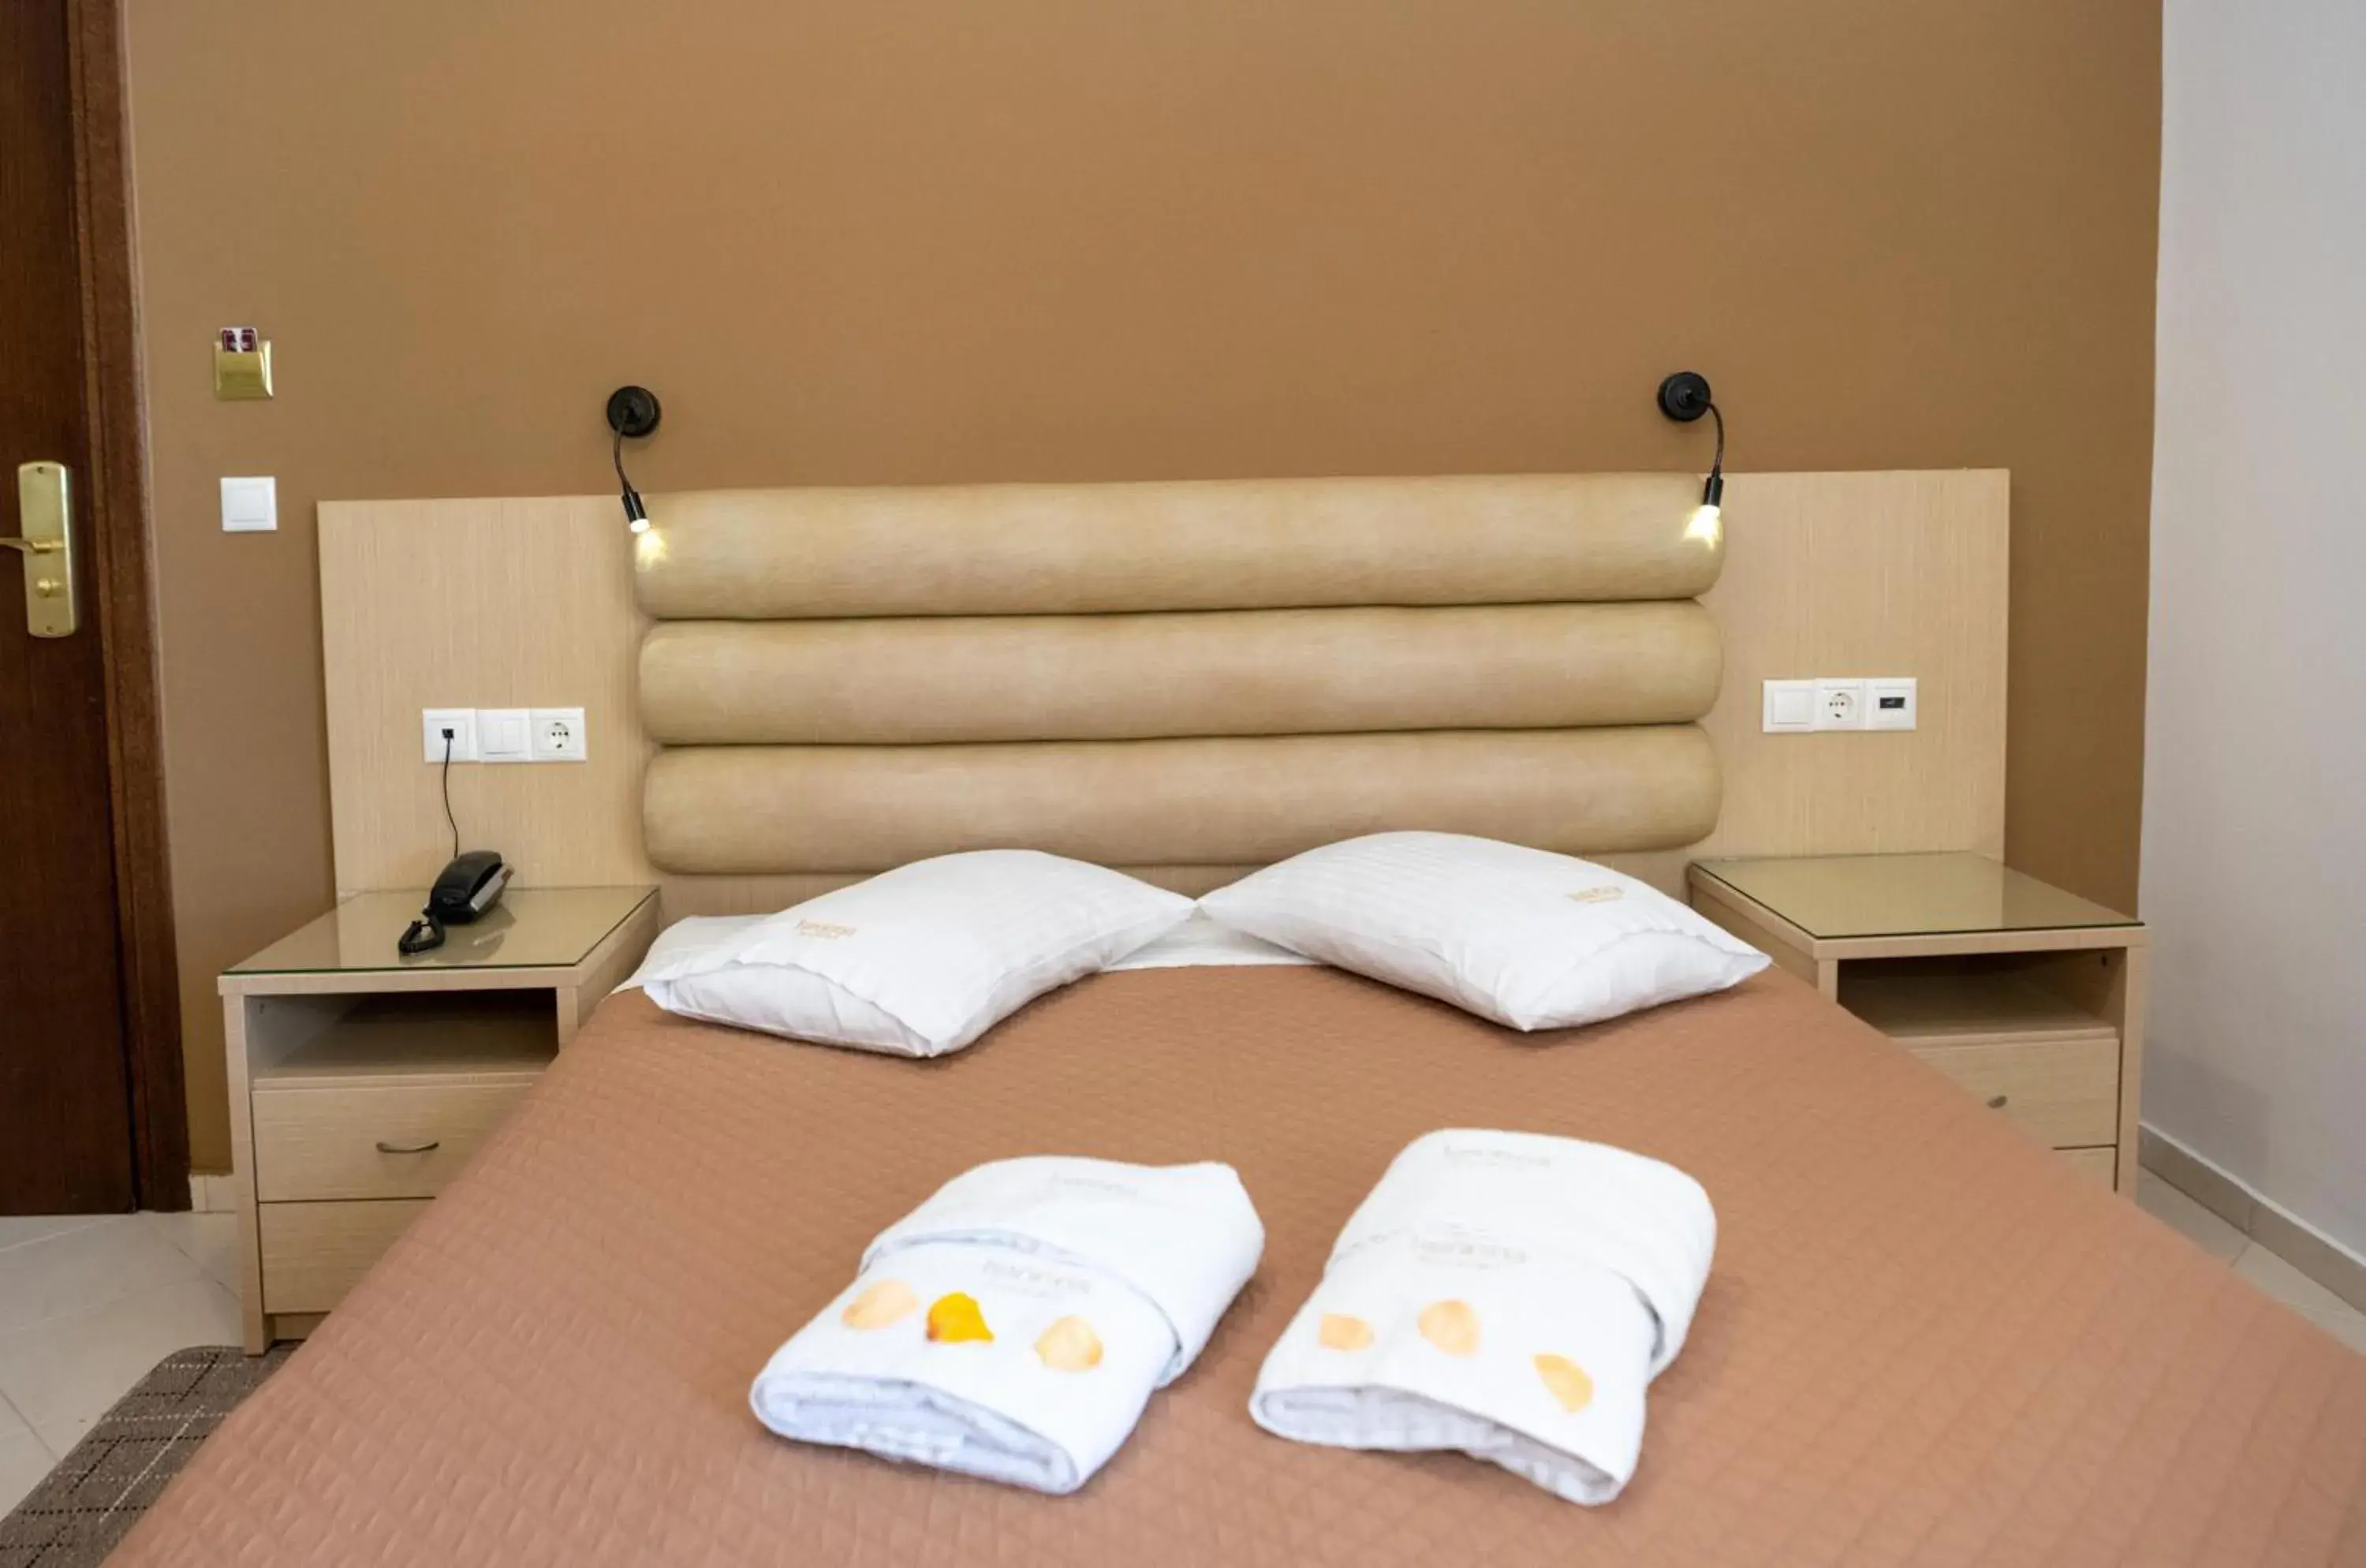 Bed in Kronos Hotel